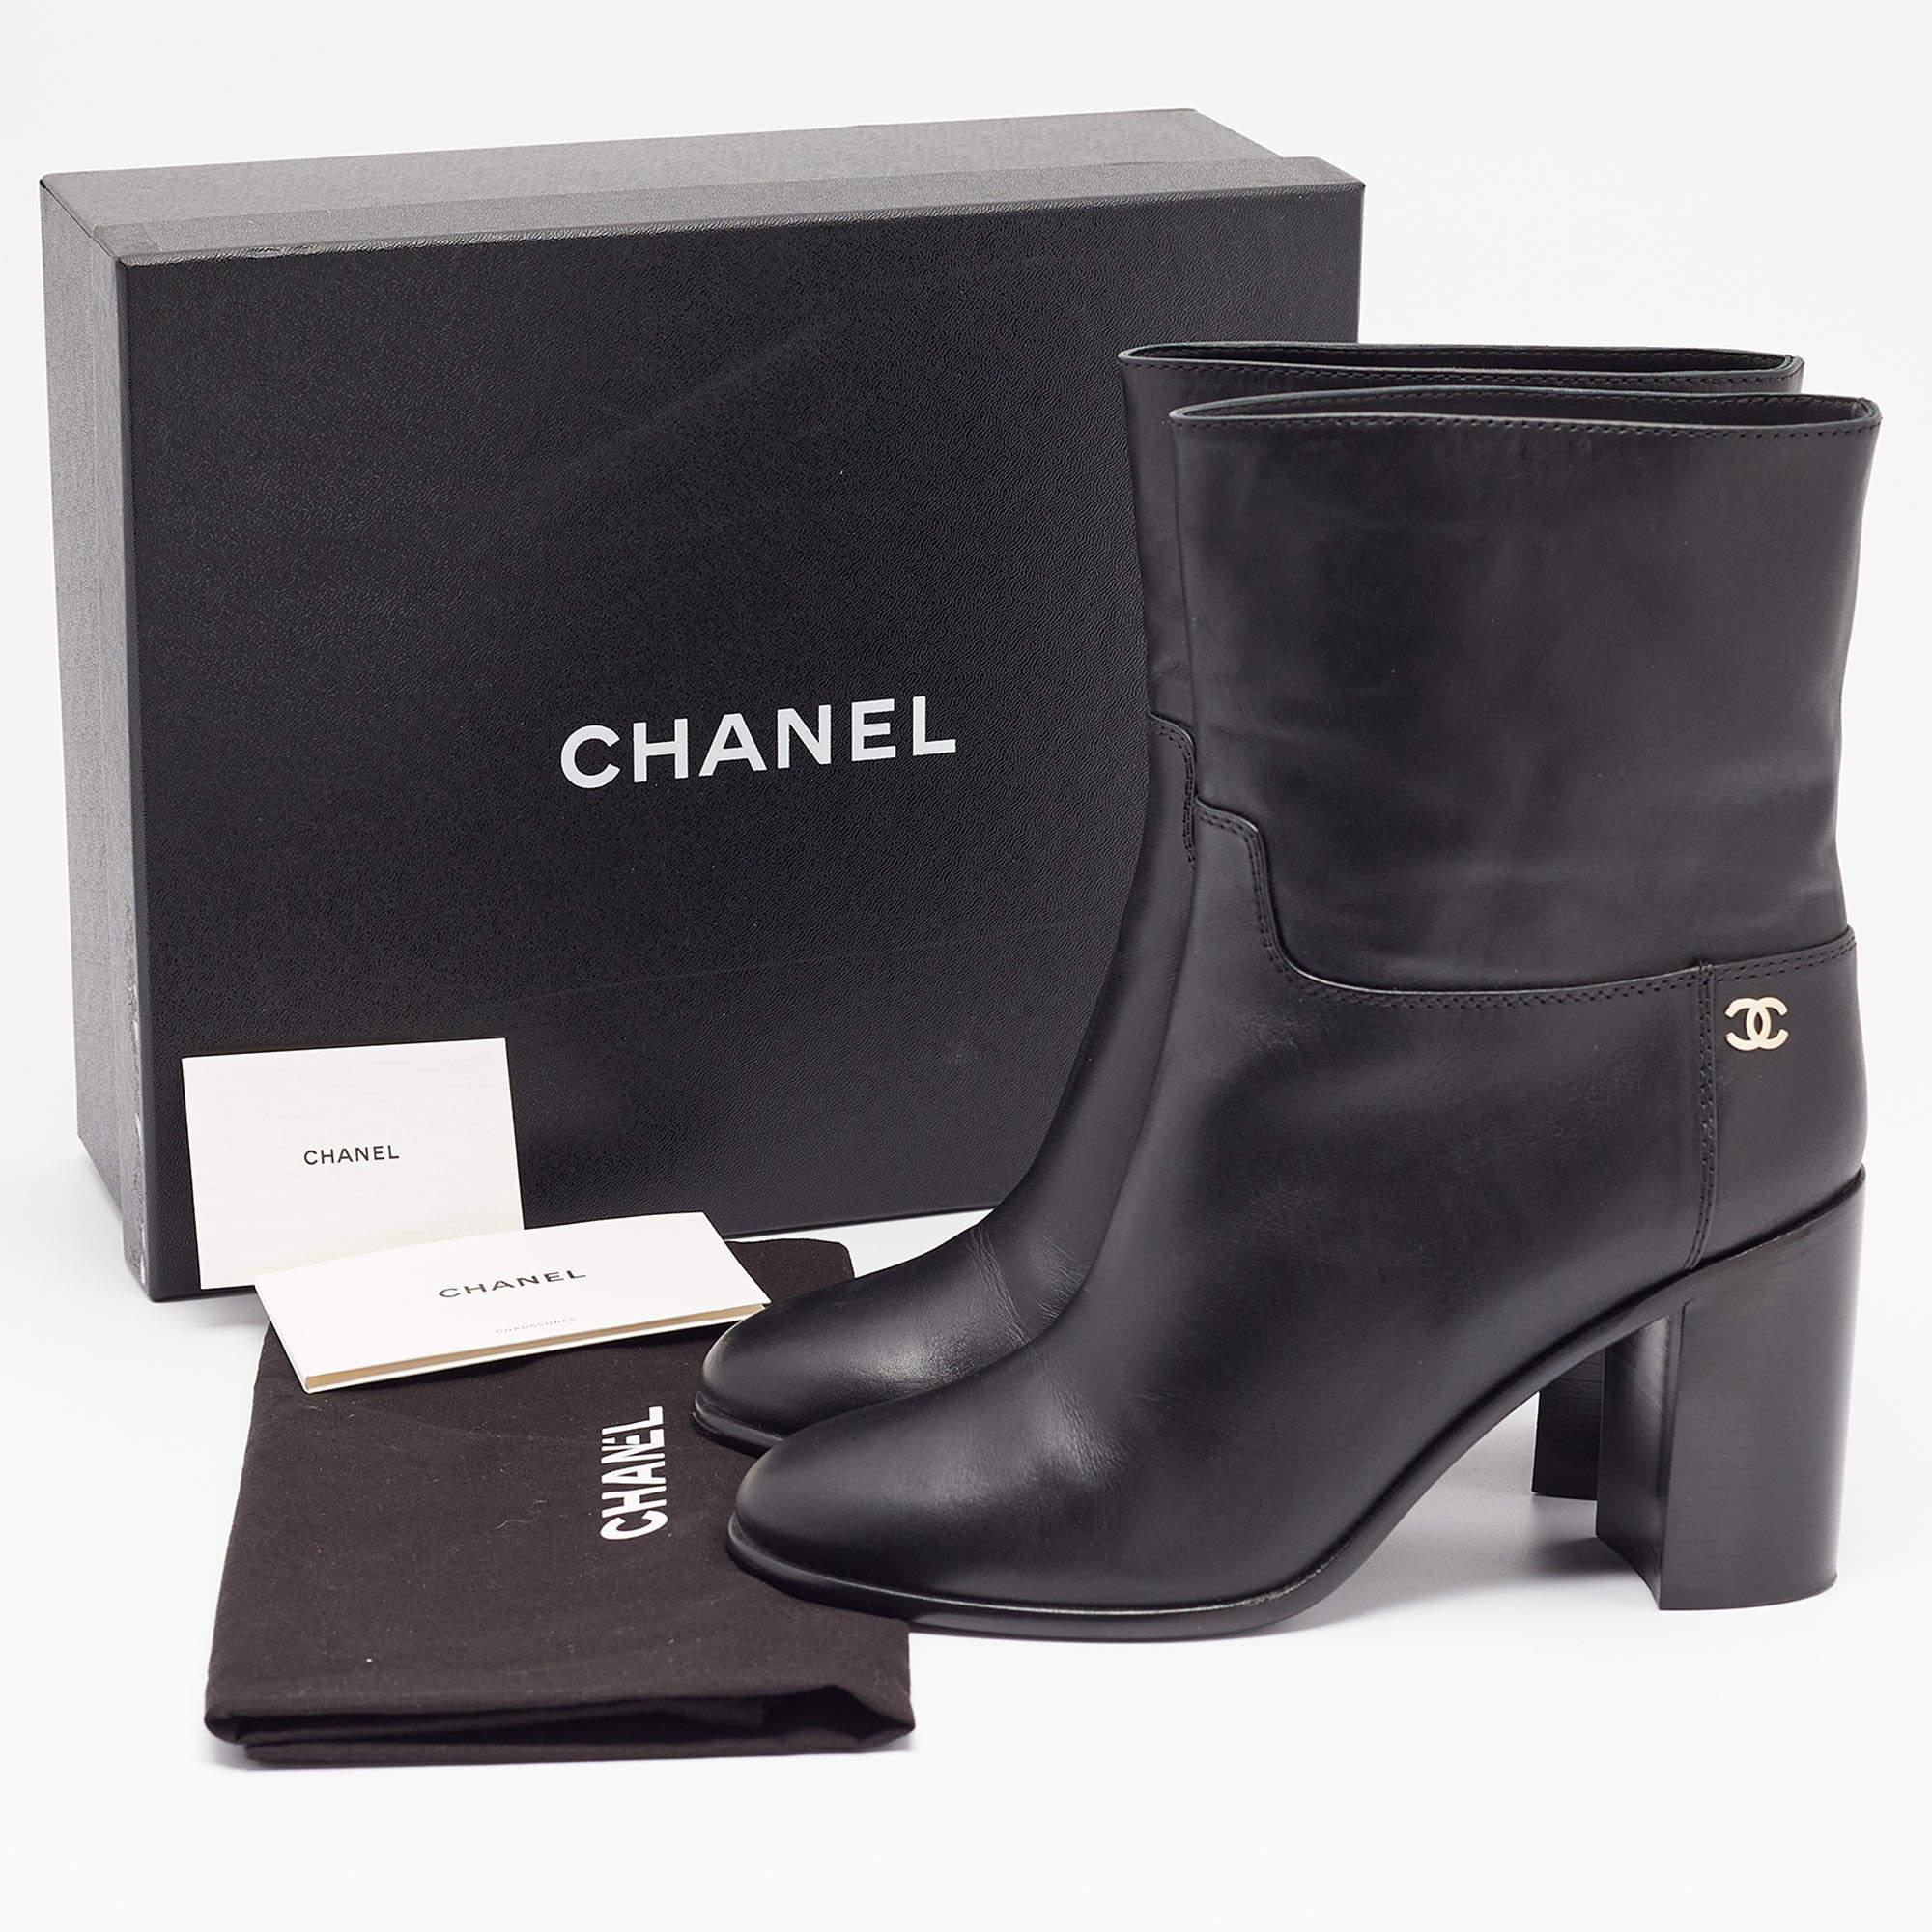 Chanel - Bottines CC en cuir noir - Taille 39 5